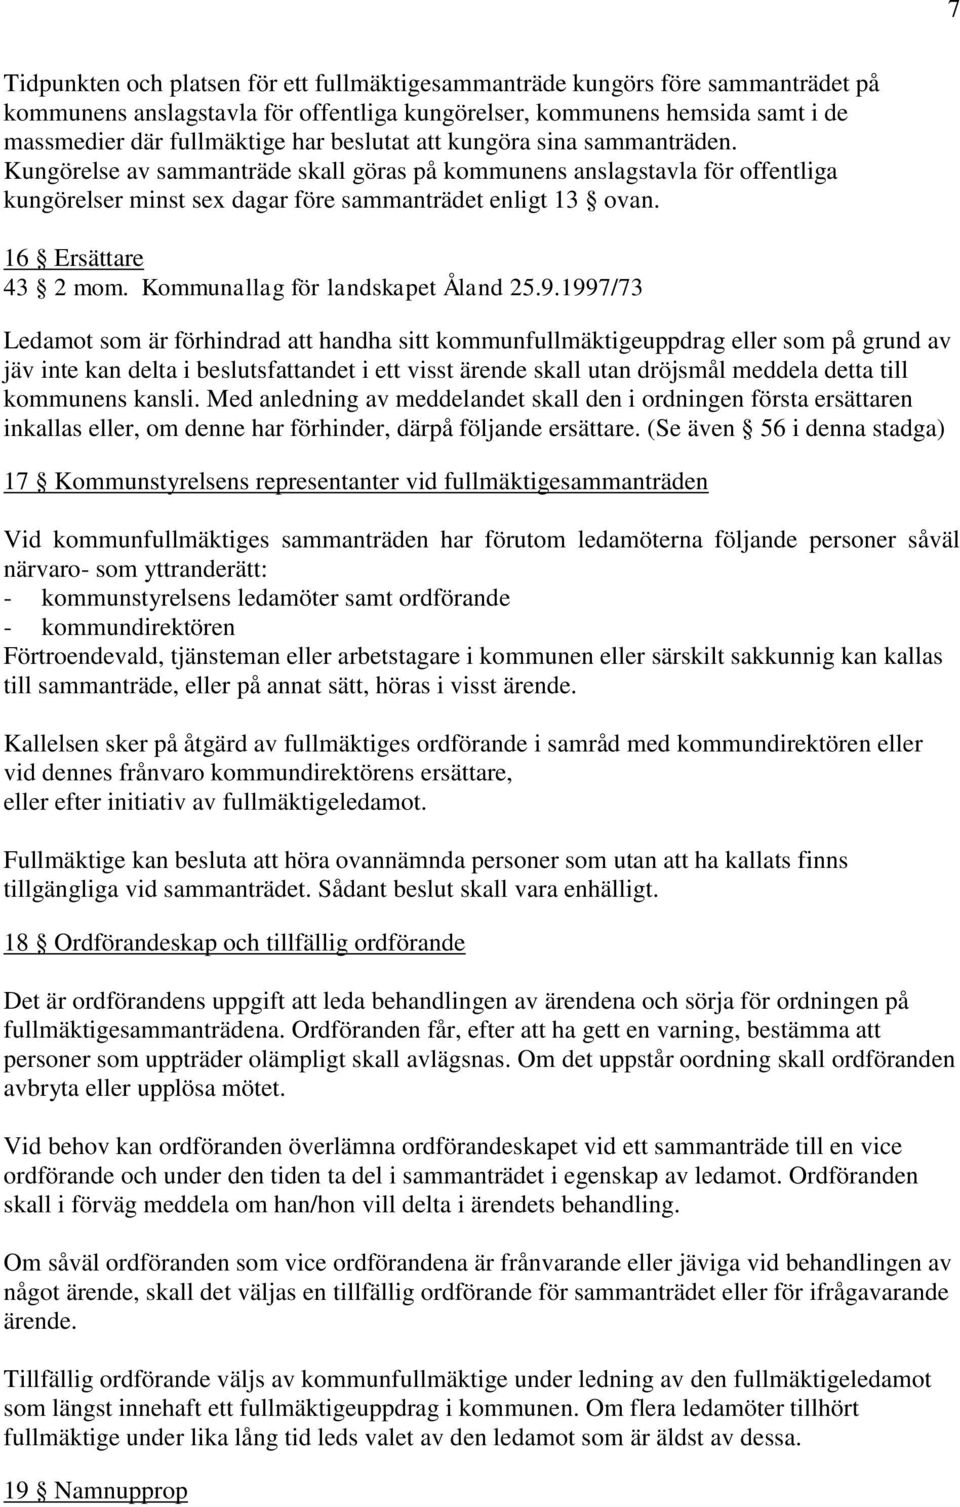 16 Ersättare 43 2 mom. Kommunallag för landskapet Åland 25.9.